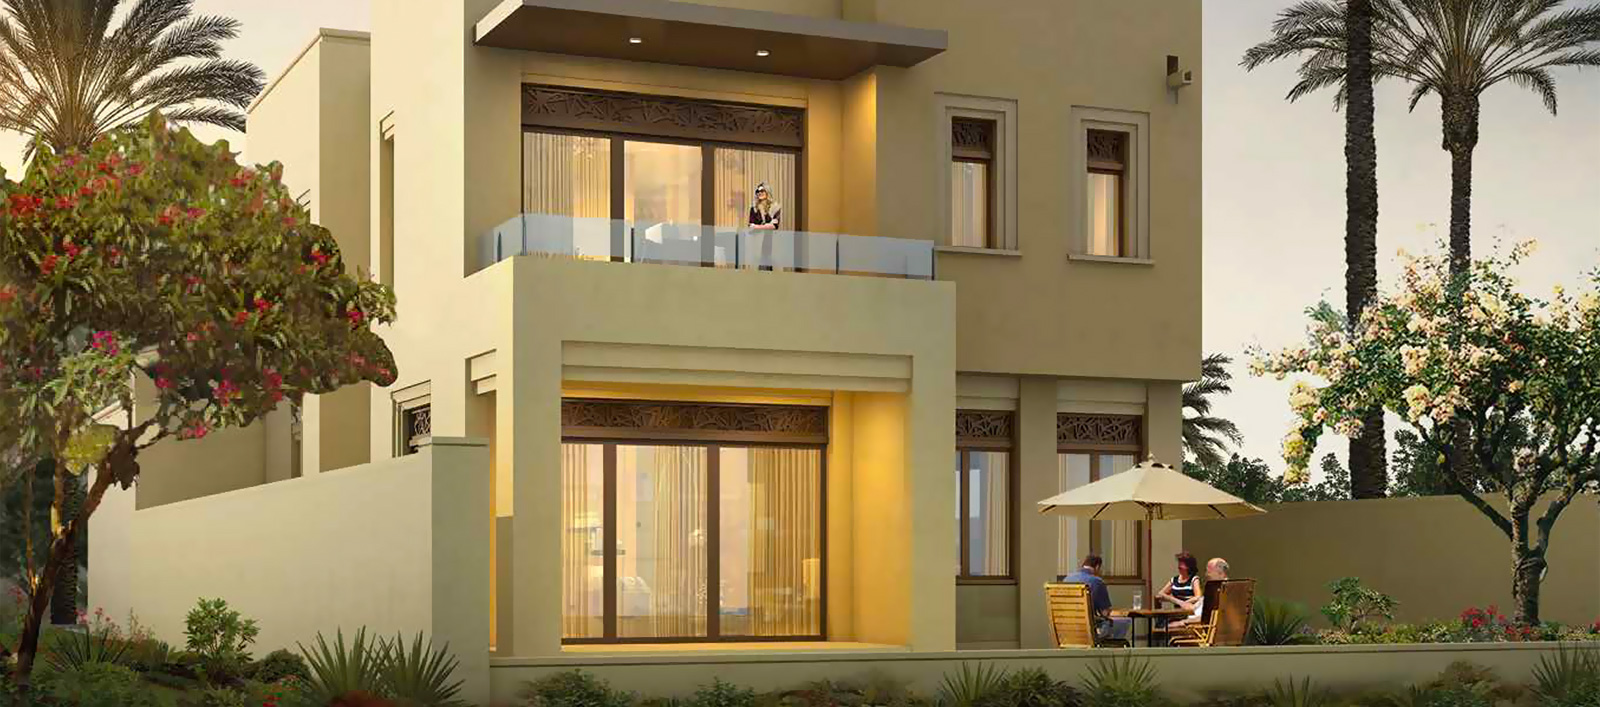 Azalea Villas - Limitless Valley - Real Estate - Dubai